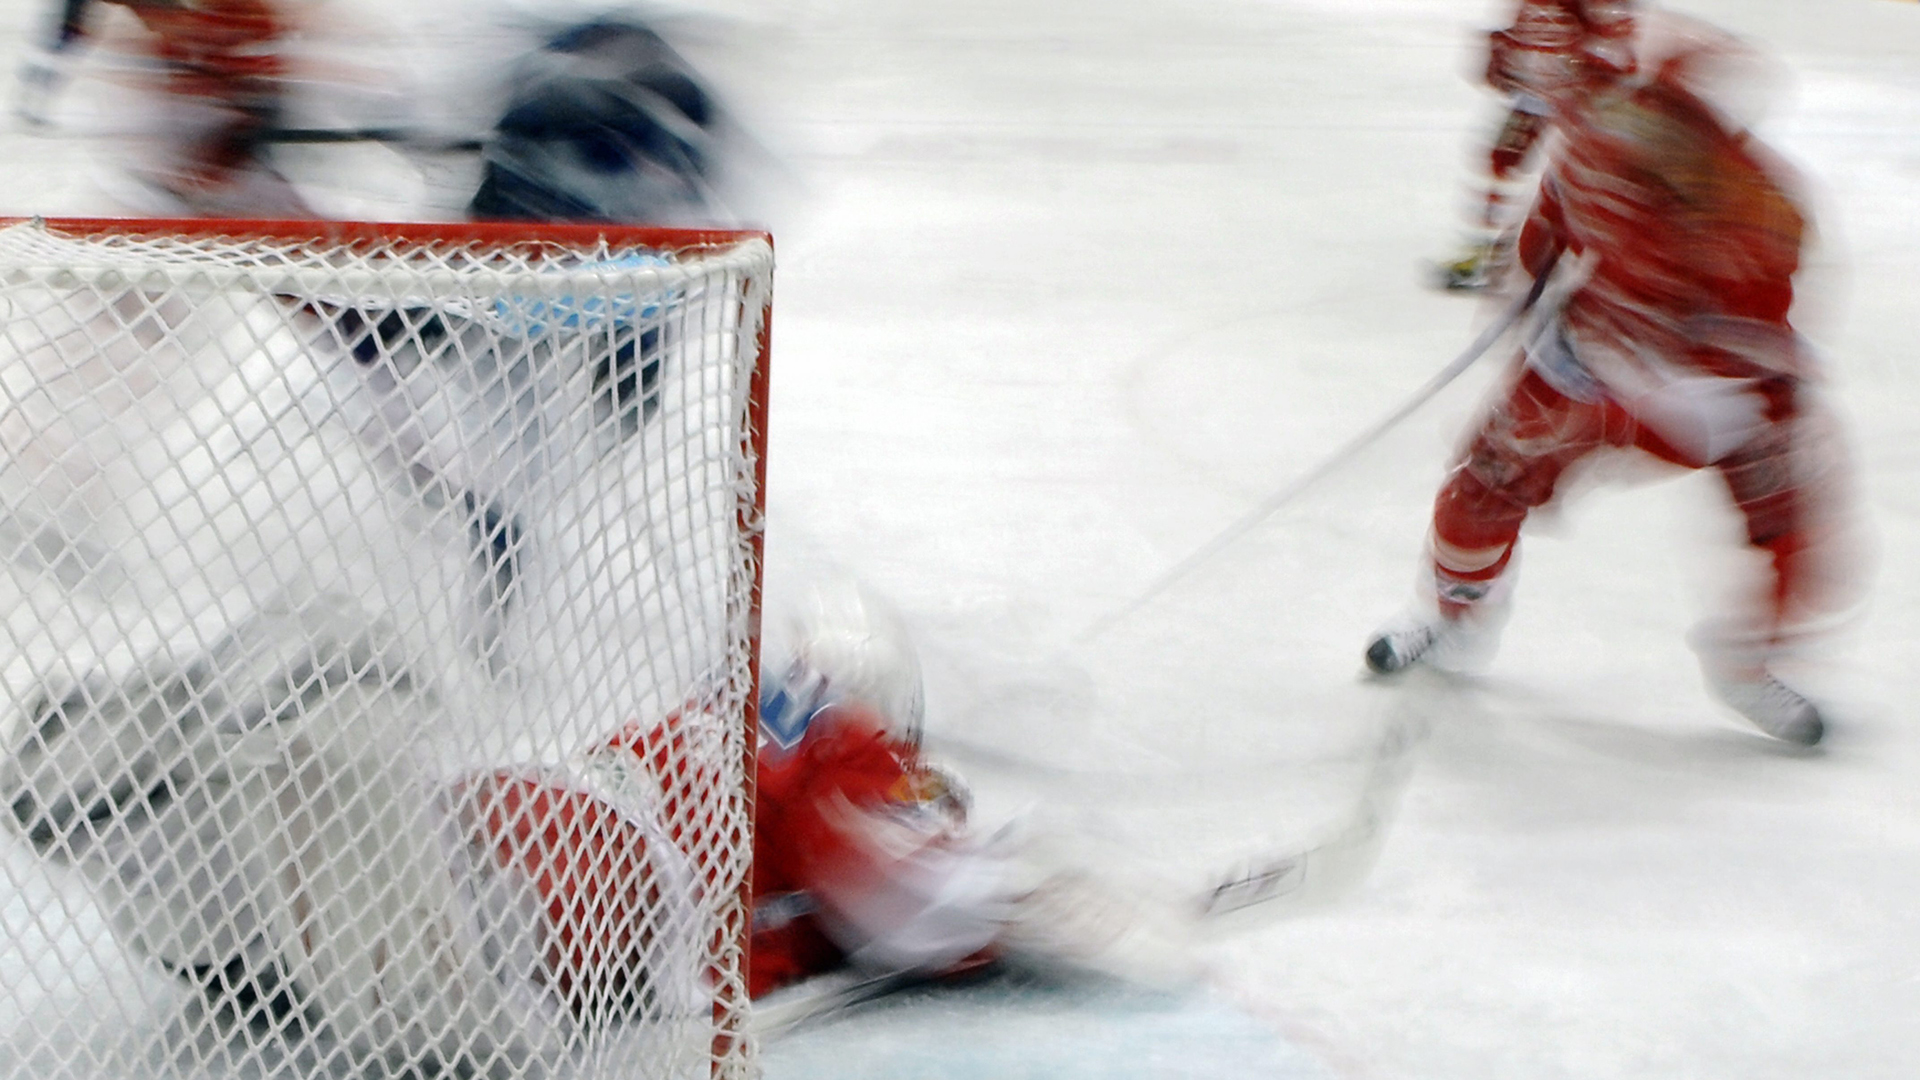 Ishockeyforbundet er spesielt hardt rammet av de nye koronarestriksjonene. I et møte med Kulturdepartementet og helsemyndighetene krever norsk idrett endringer. Foto: NTB / Samfoto